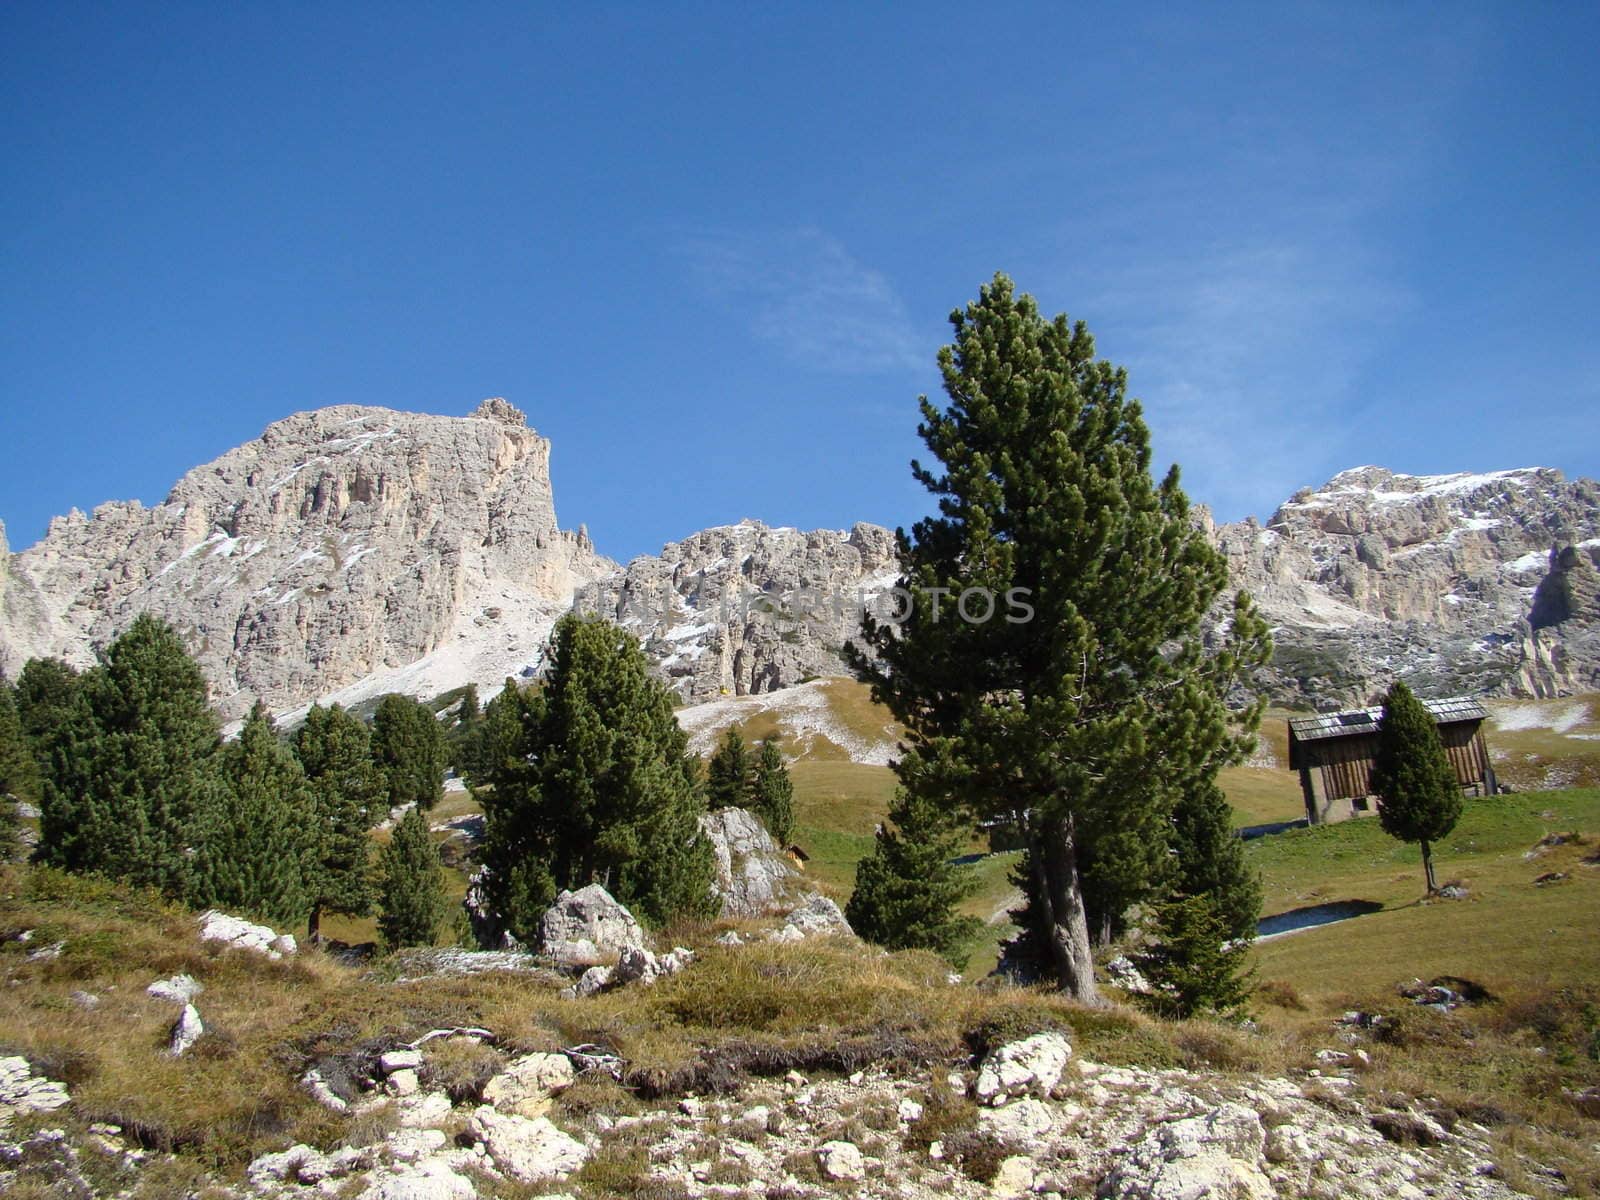 	
scenery in Dolomites in Italy.